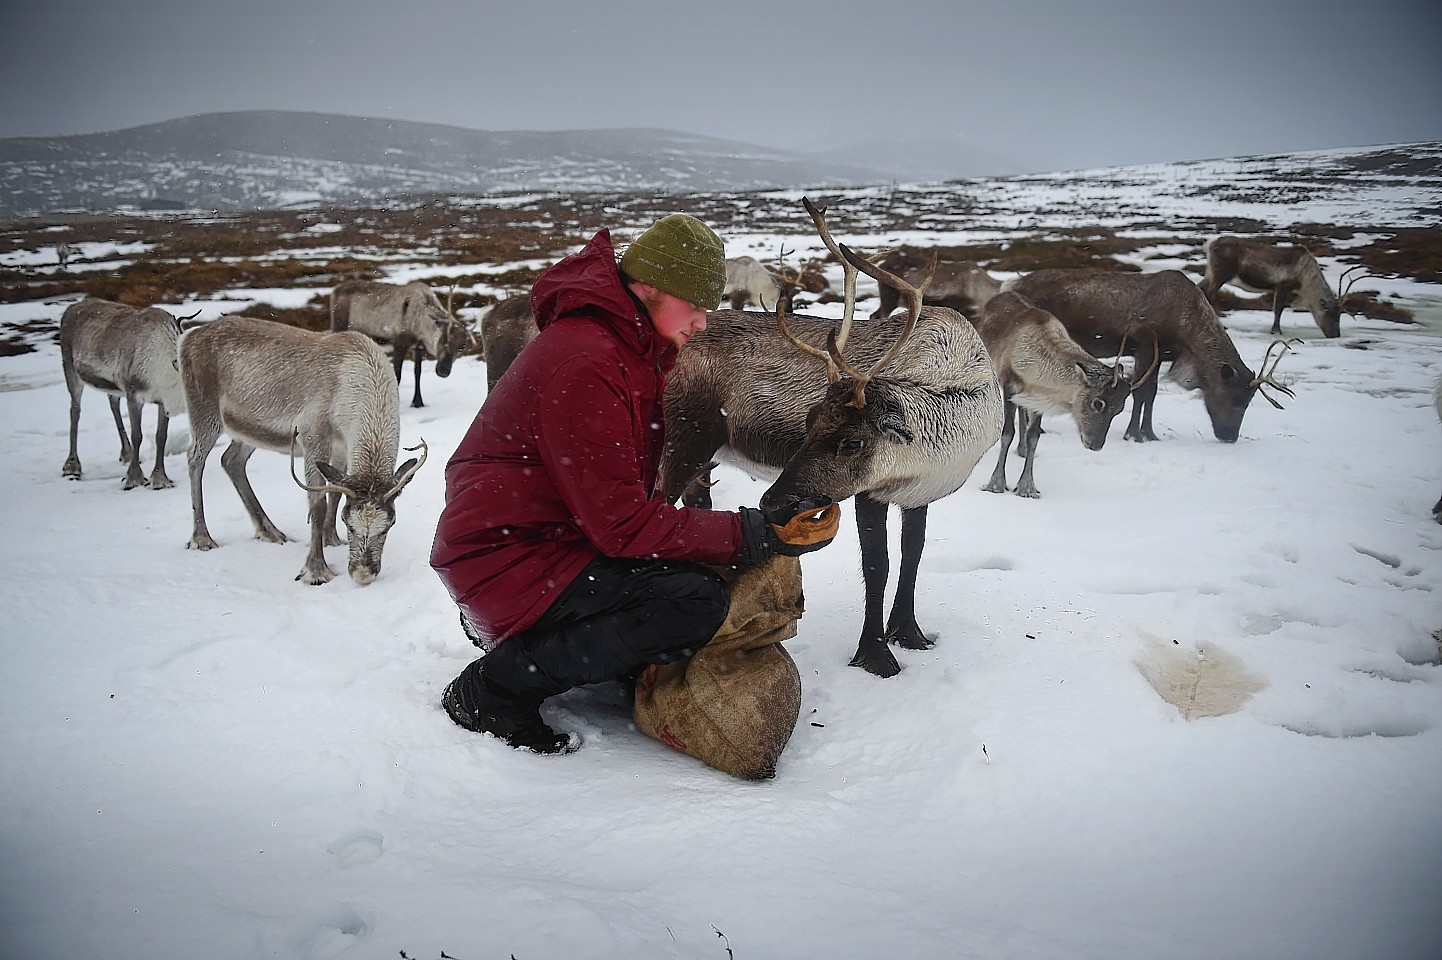 The Cairngorms reindeer